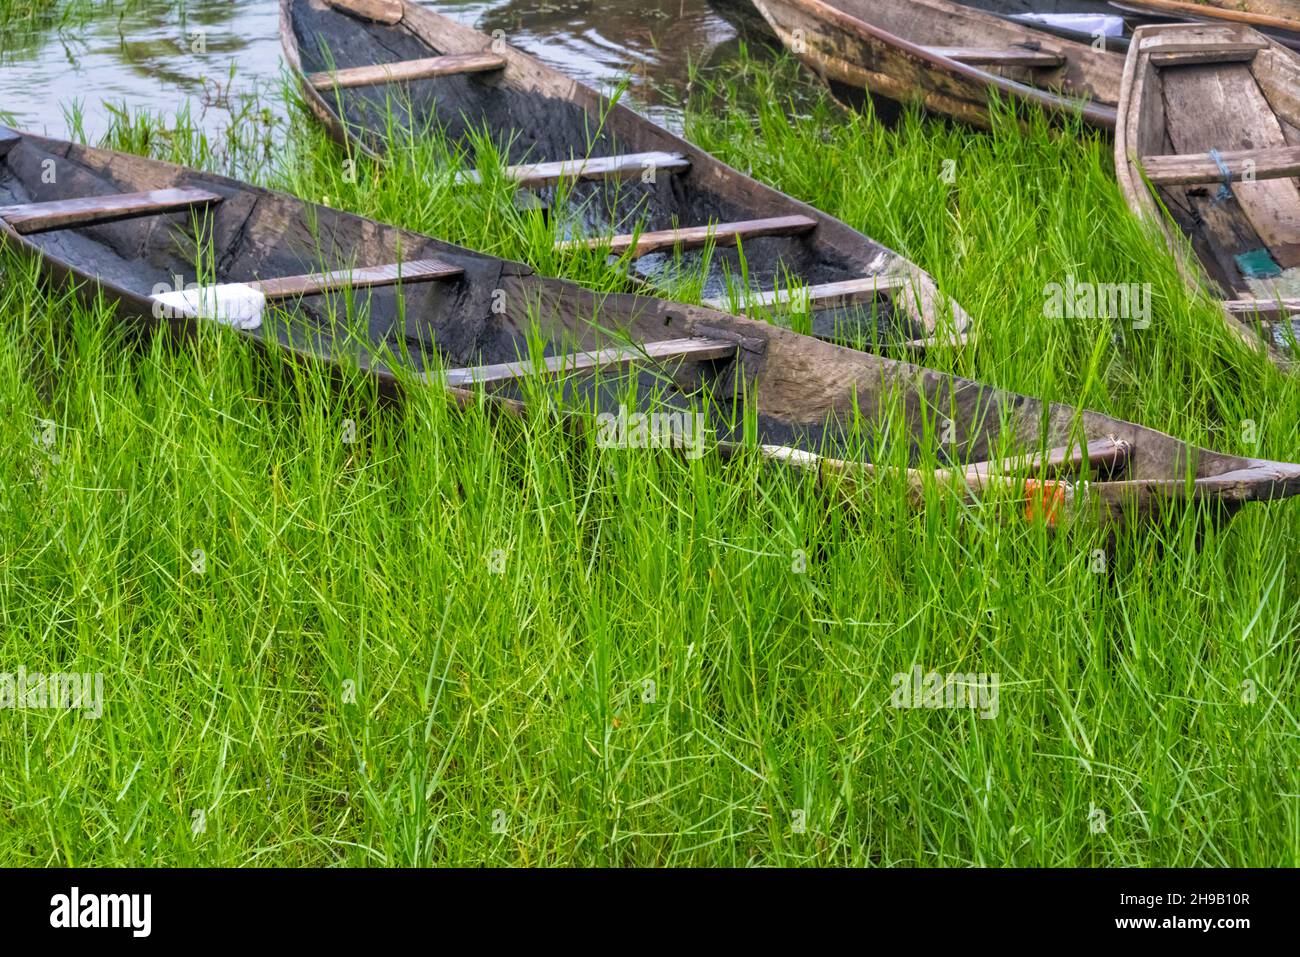 Bateaux sur le lac Nokoue, Bénin Banque D'Images